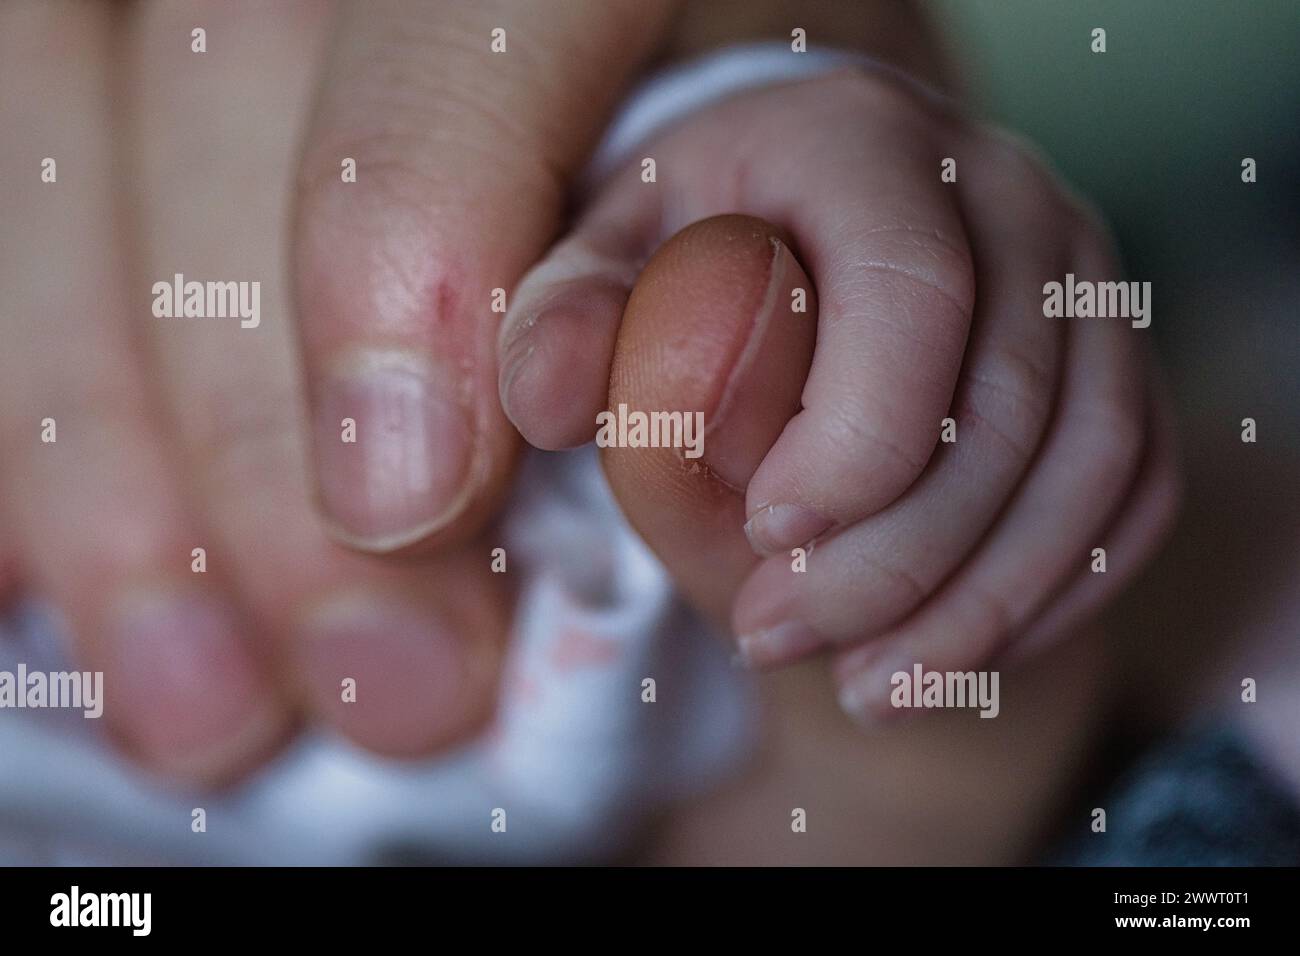 Primo piano della mano minuscola del neonato che stringe il dito di un adulto, simboleggiando la cura e l'amore dei genitori. Foto Stock